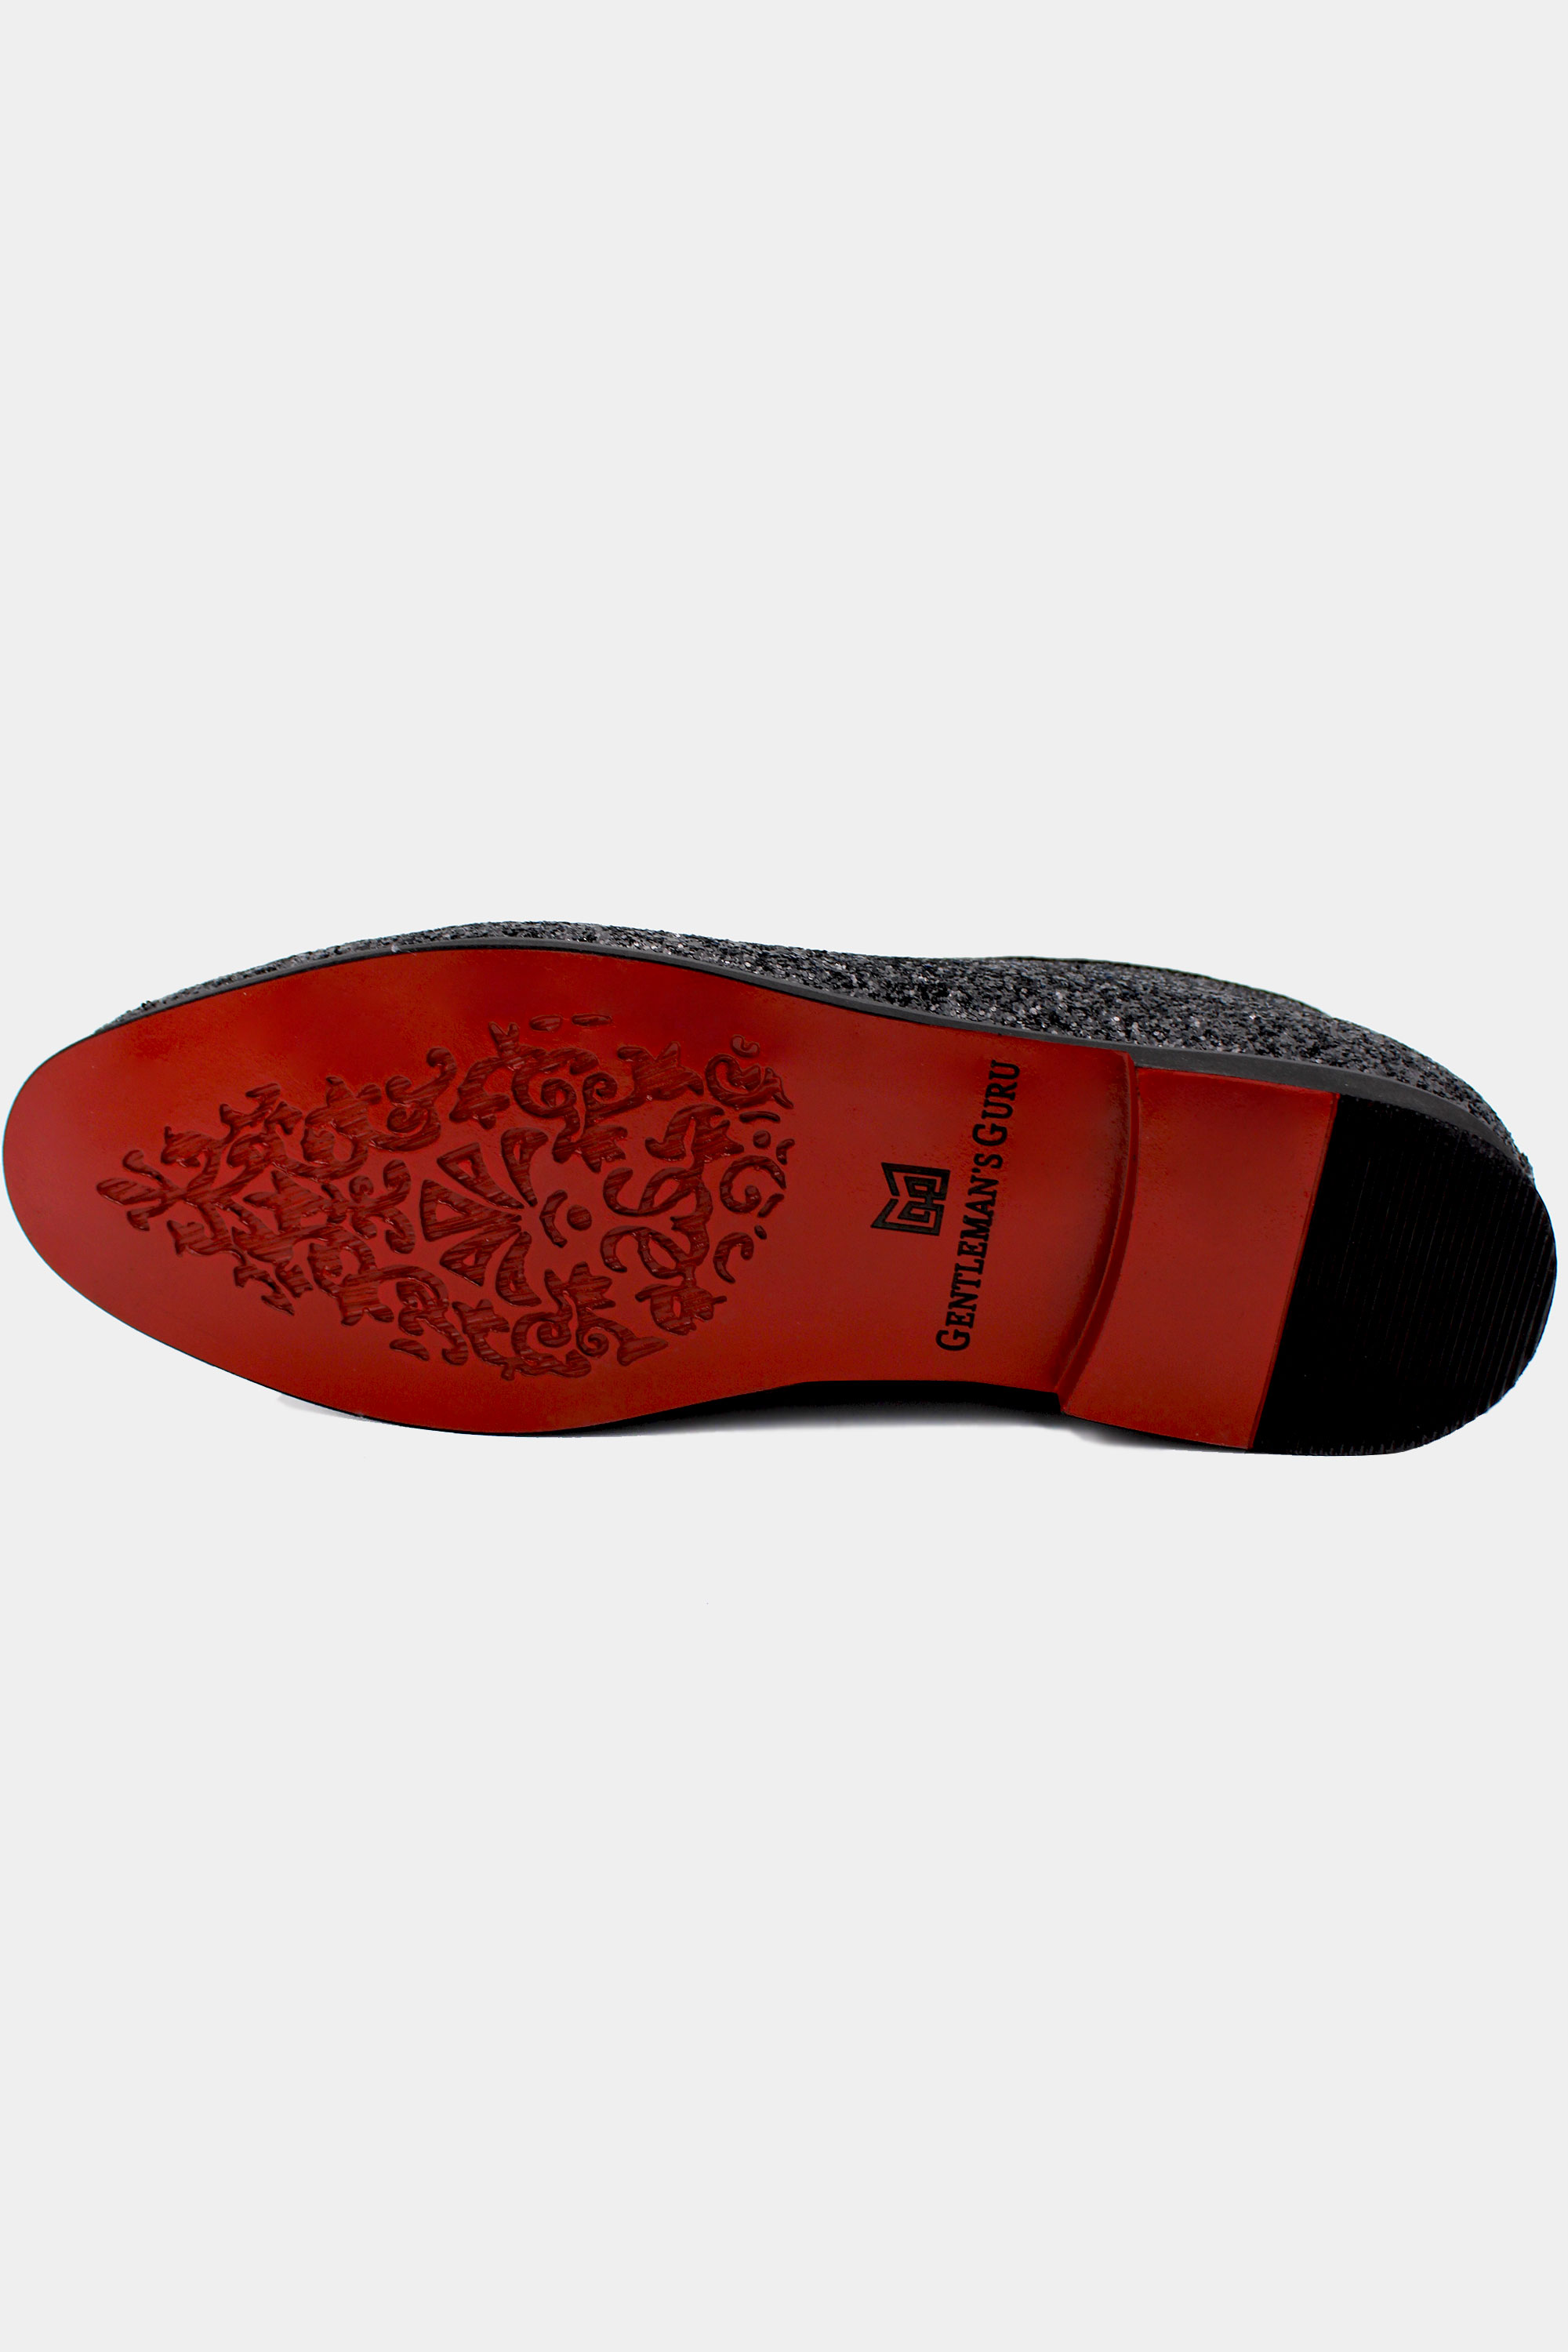 Luxury-Designer-Loafers-from-Gentlemansguru.com